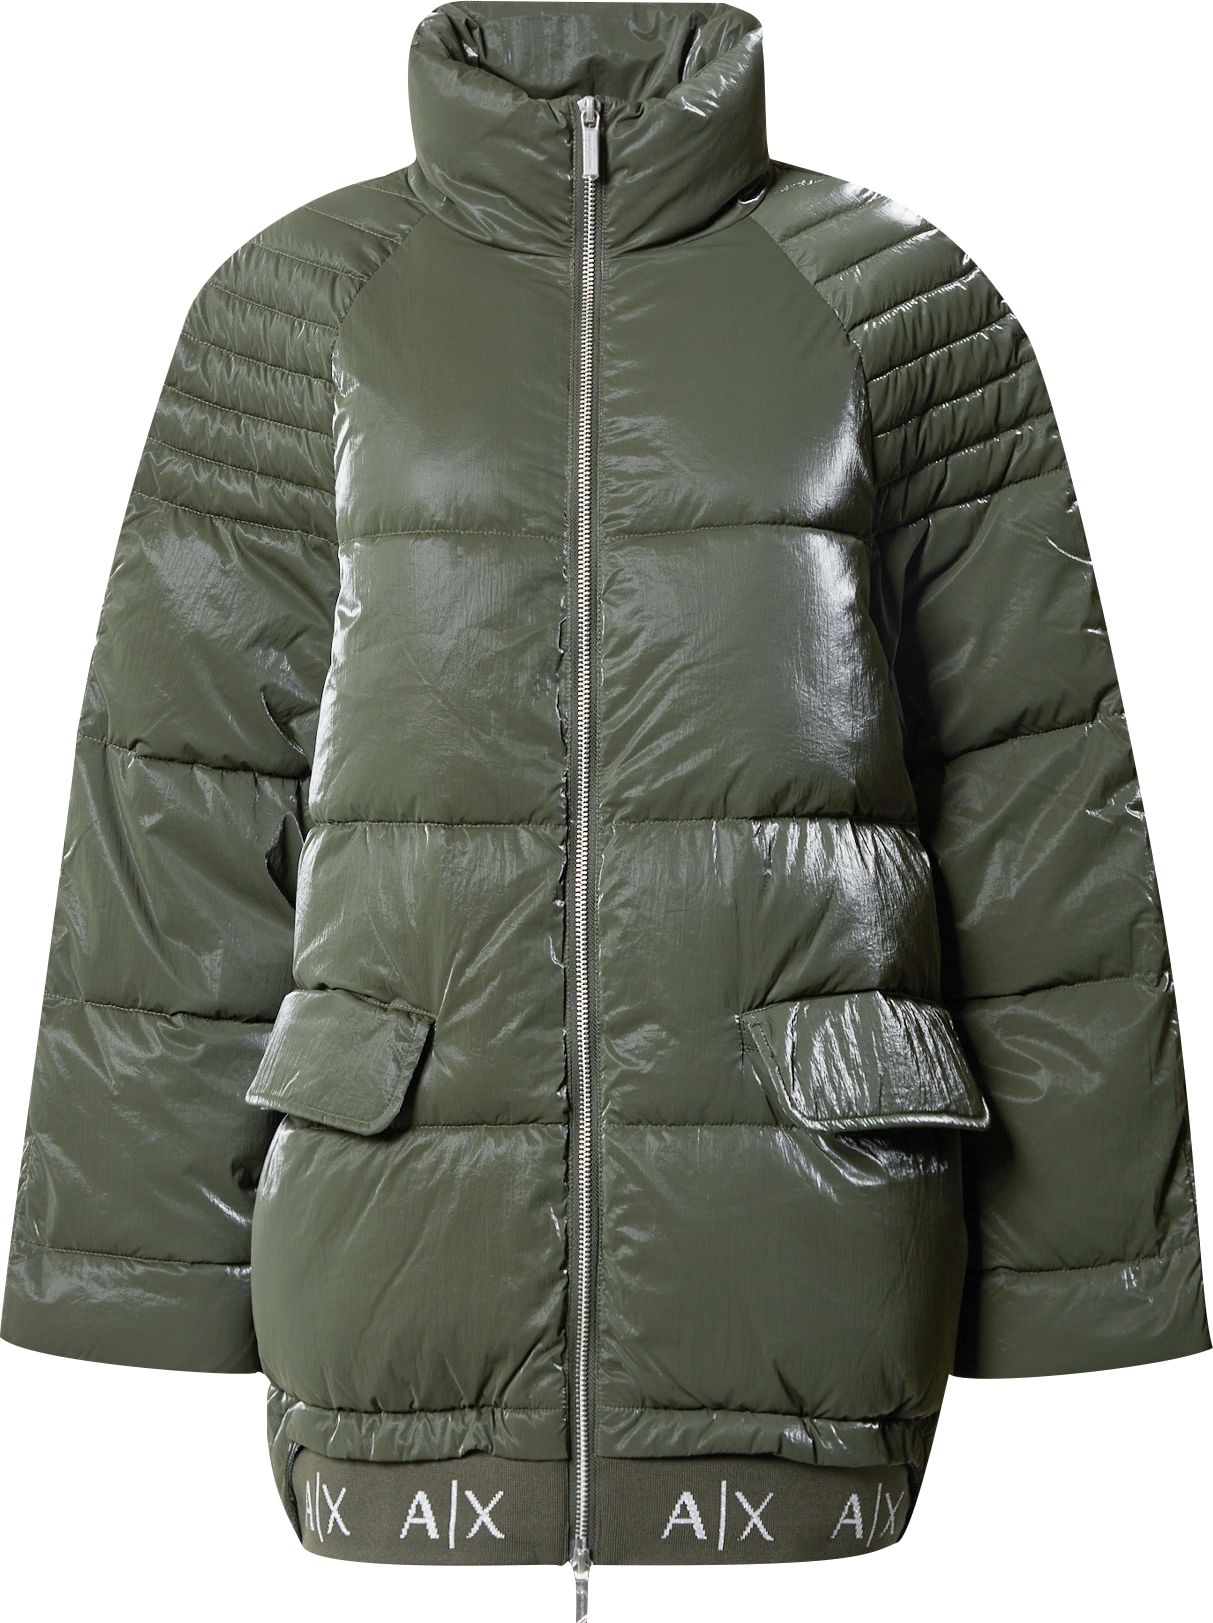 Zimní bunda Armani Exchange khaki / bílá